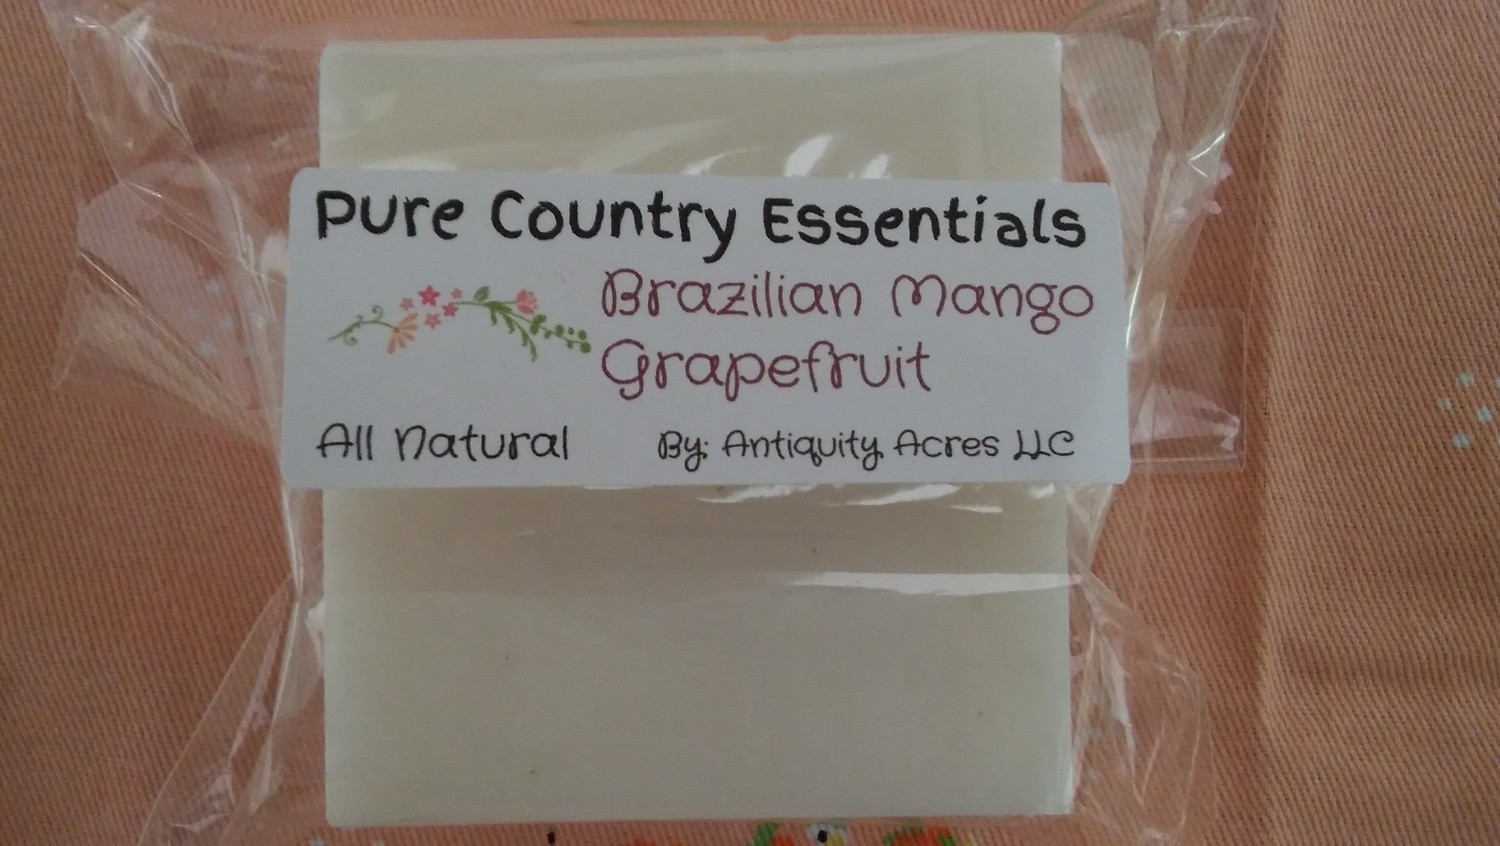 Pure Country Essentials Soap, Cocoa Butter, Brazilian Mango, Grapefruit Fragrance, Square